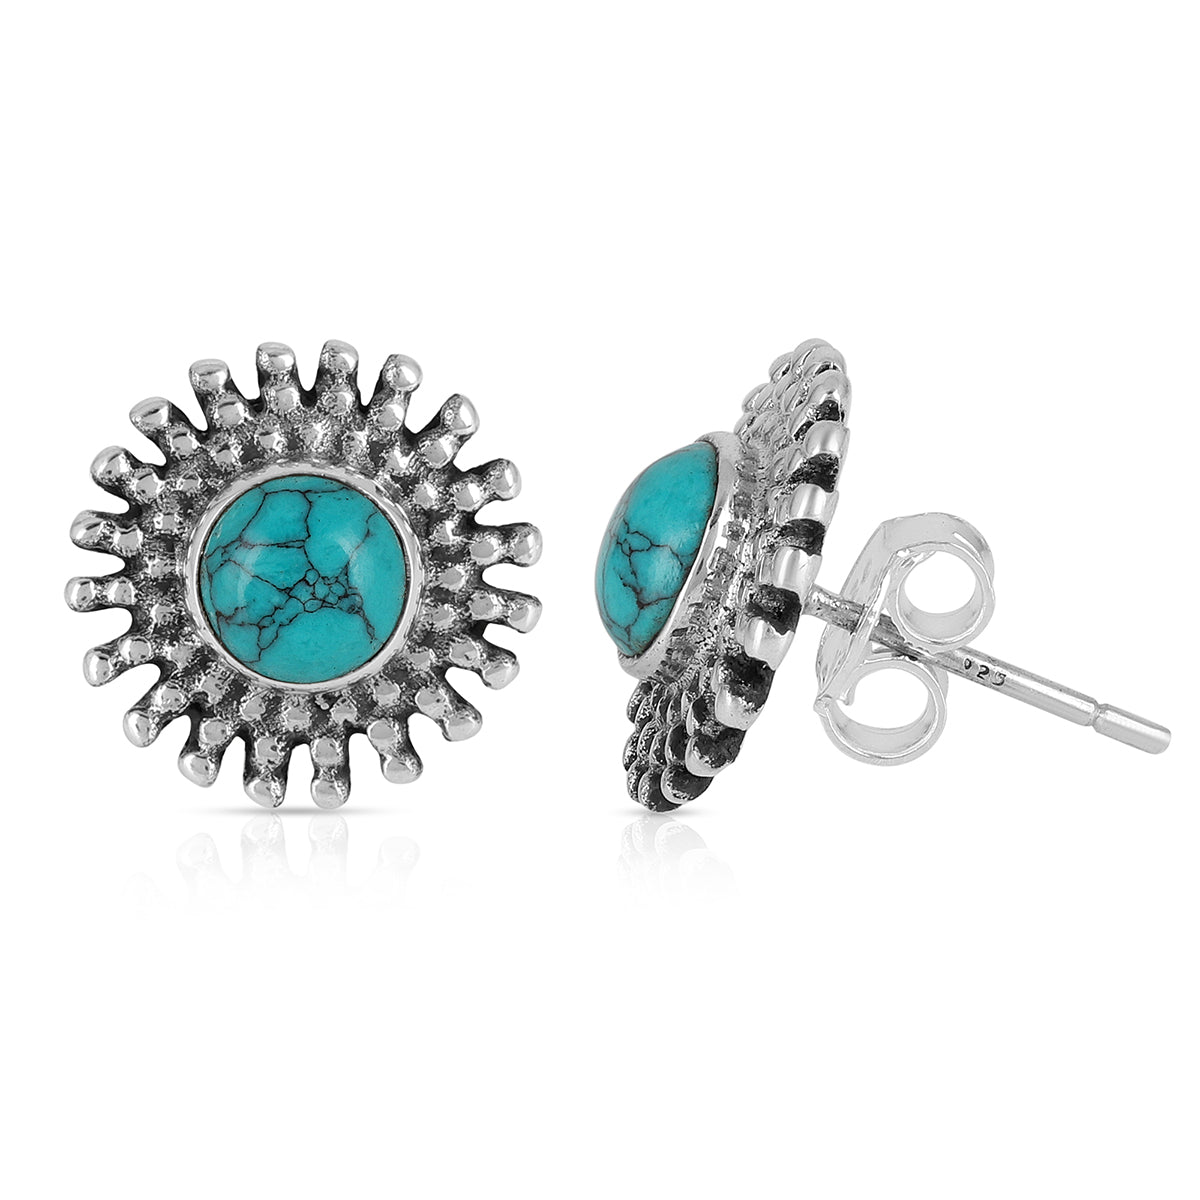 Buy Ruby Stud Earrings with Cz Diamond Stone Handmade 925 Sterling Silver  Women Earrings (Green) at Amazon.in